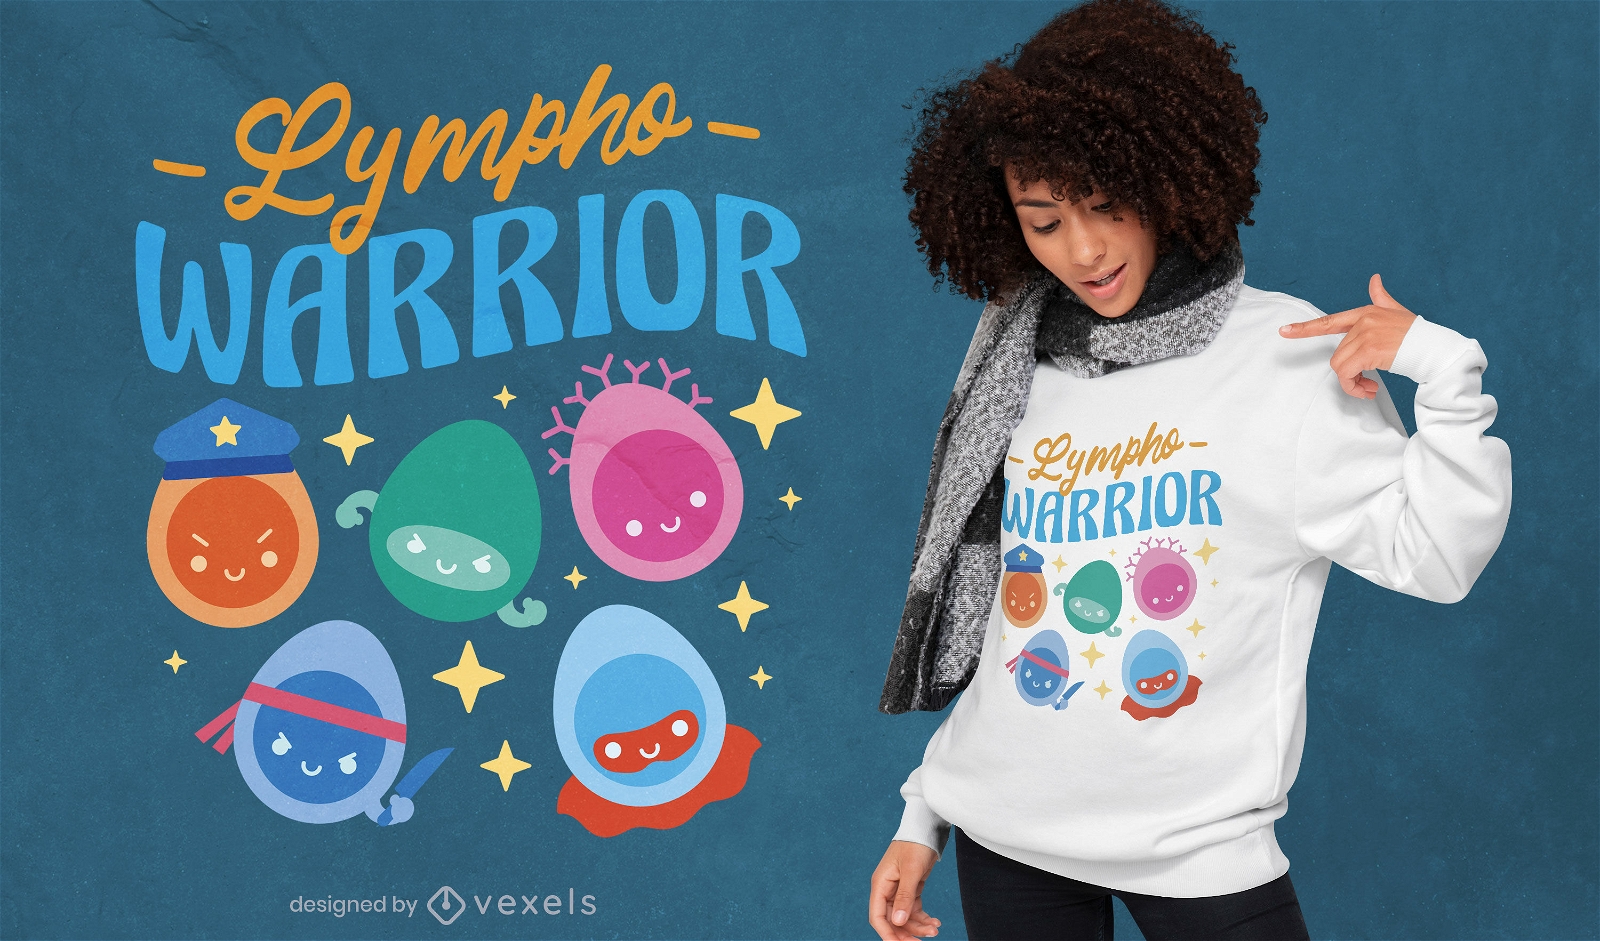 Lympho warrior t-shirt design